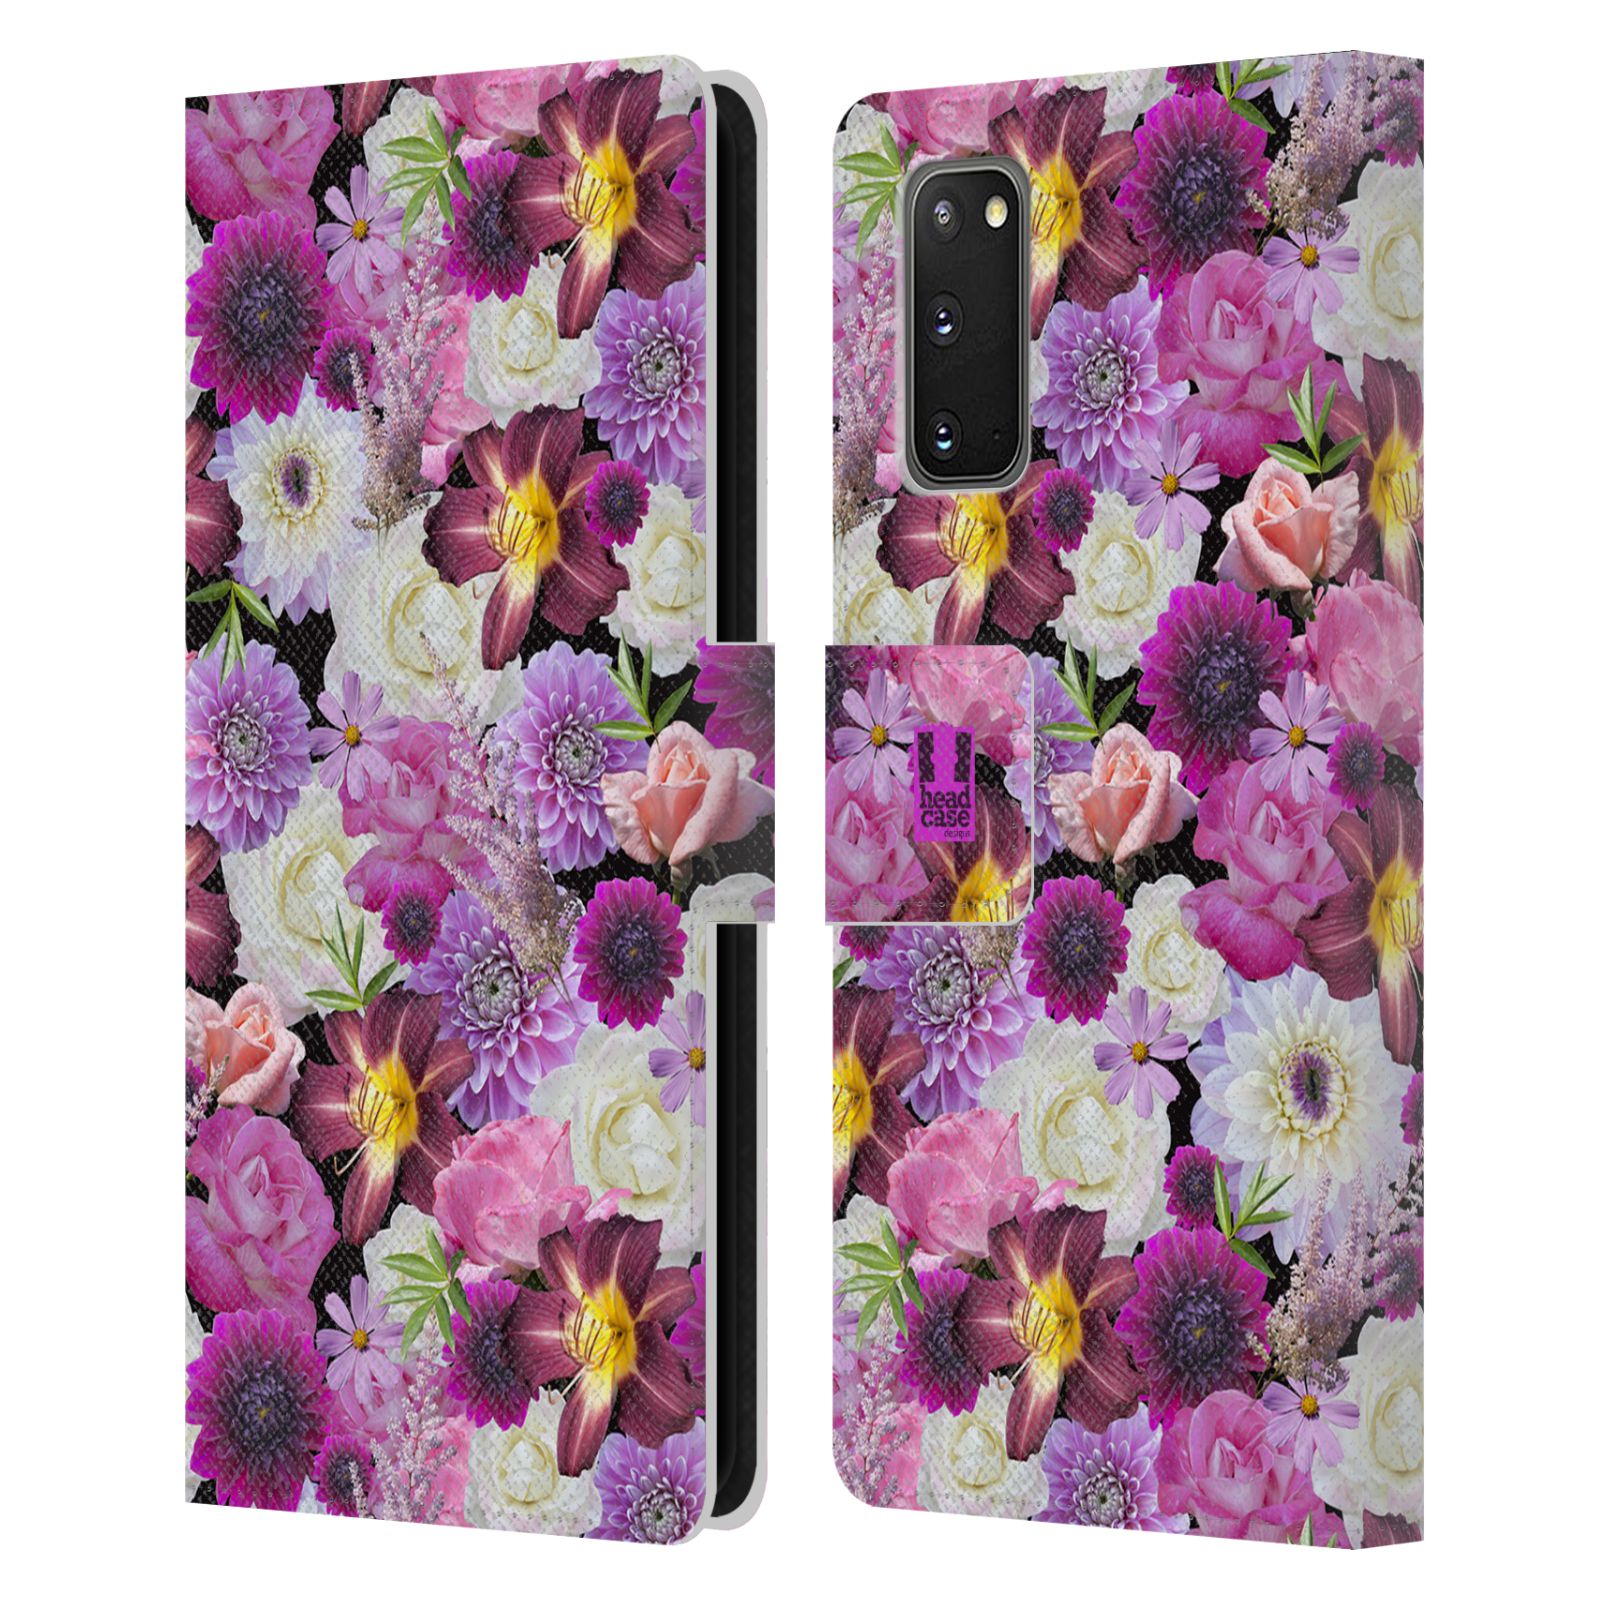 Pouzdro na mobil Samsung Galaxy S20 květy foto fialová a bílá